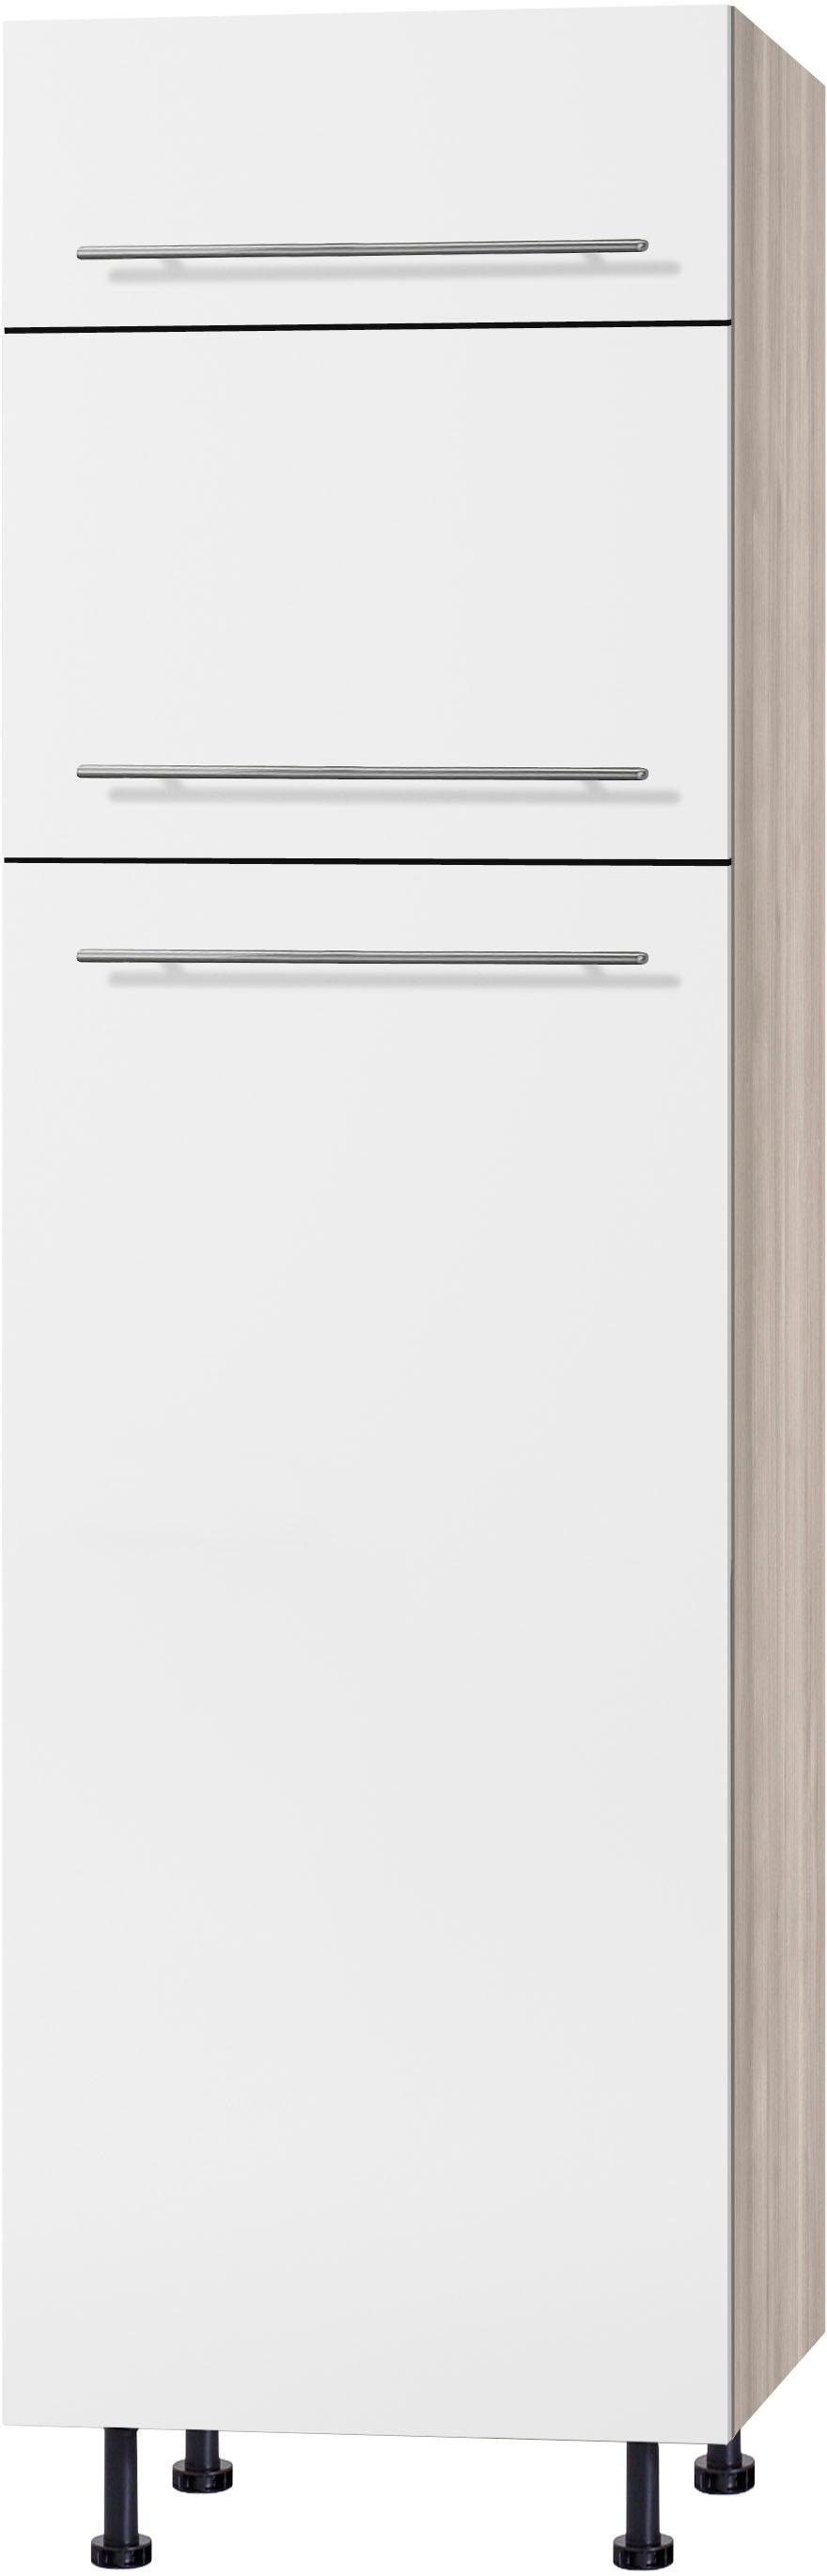 OPTIFIT Kühlumbauschrank Bern 60 cm breit, 212 cm hoch, mit höhenverstellbaren Stellfüßen weiß Hochglanz/akaziefarben | akaziefarben